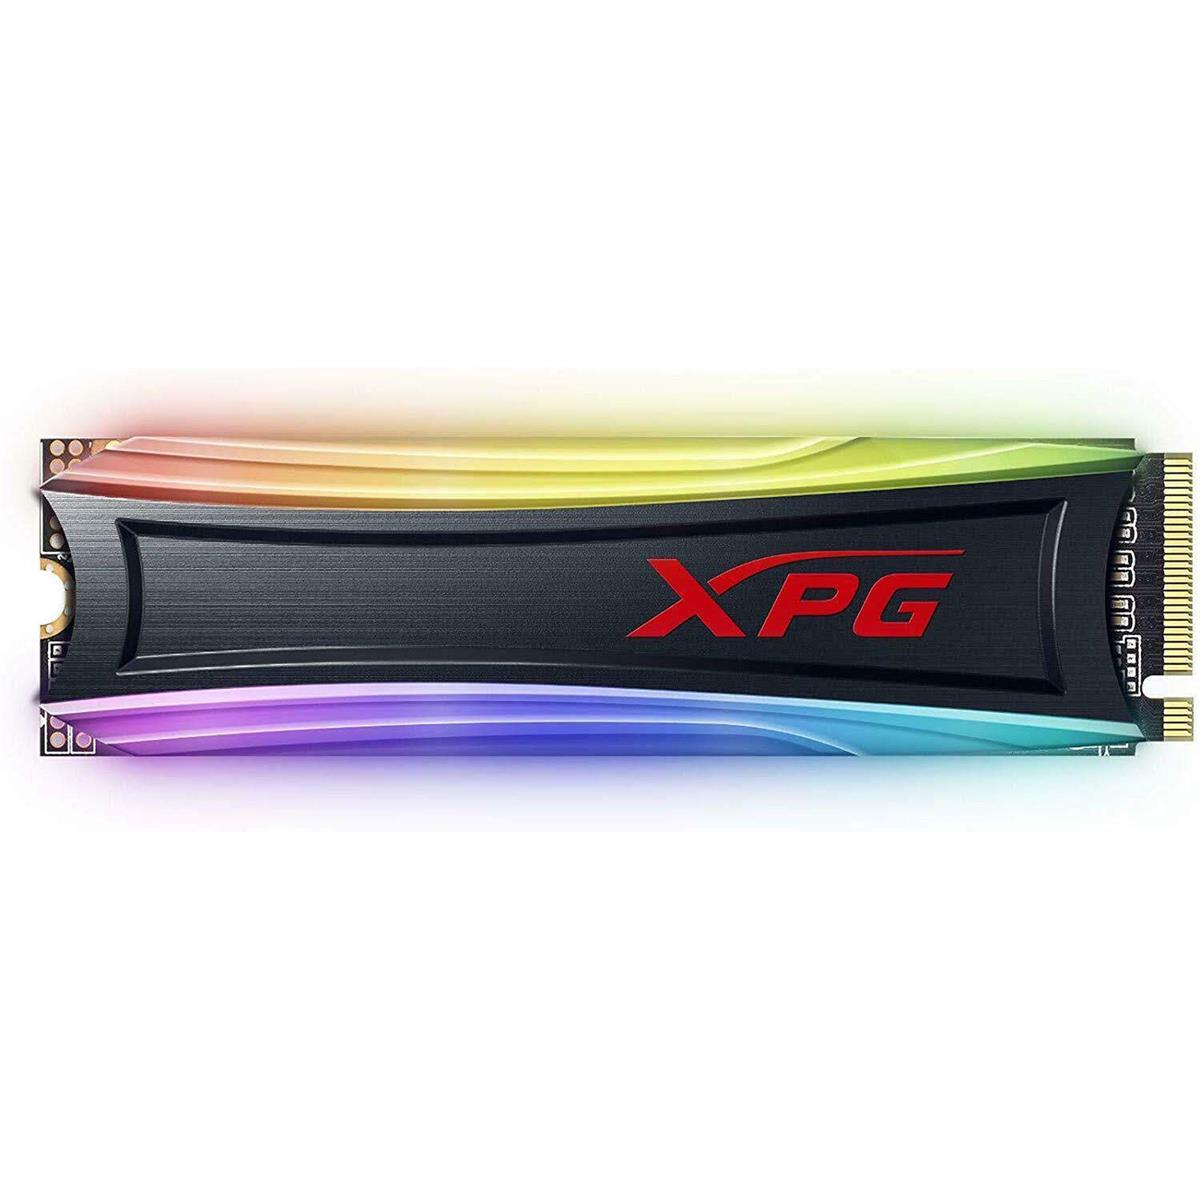 Image of ADATA XPG SPECTRIX S40G RGB 4TB 3D NAND NVMe PCIe Gen 3.0 x4 M.2 Internal SSD